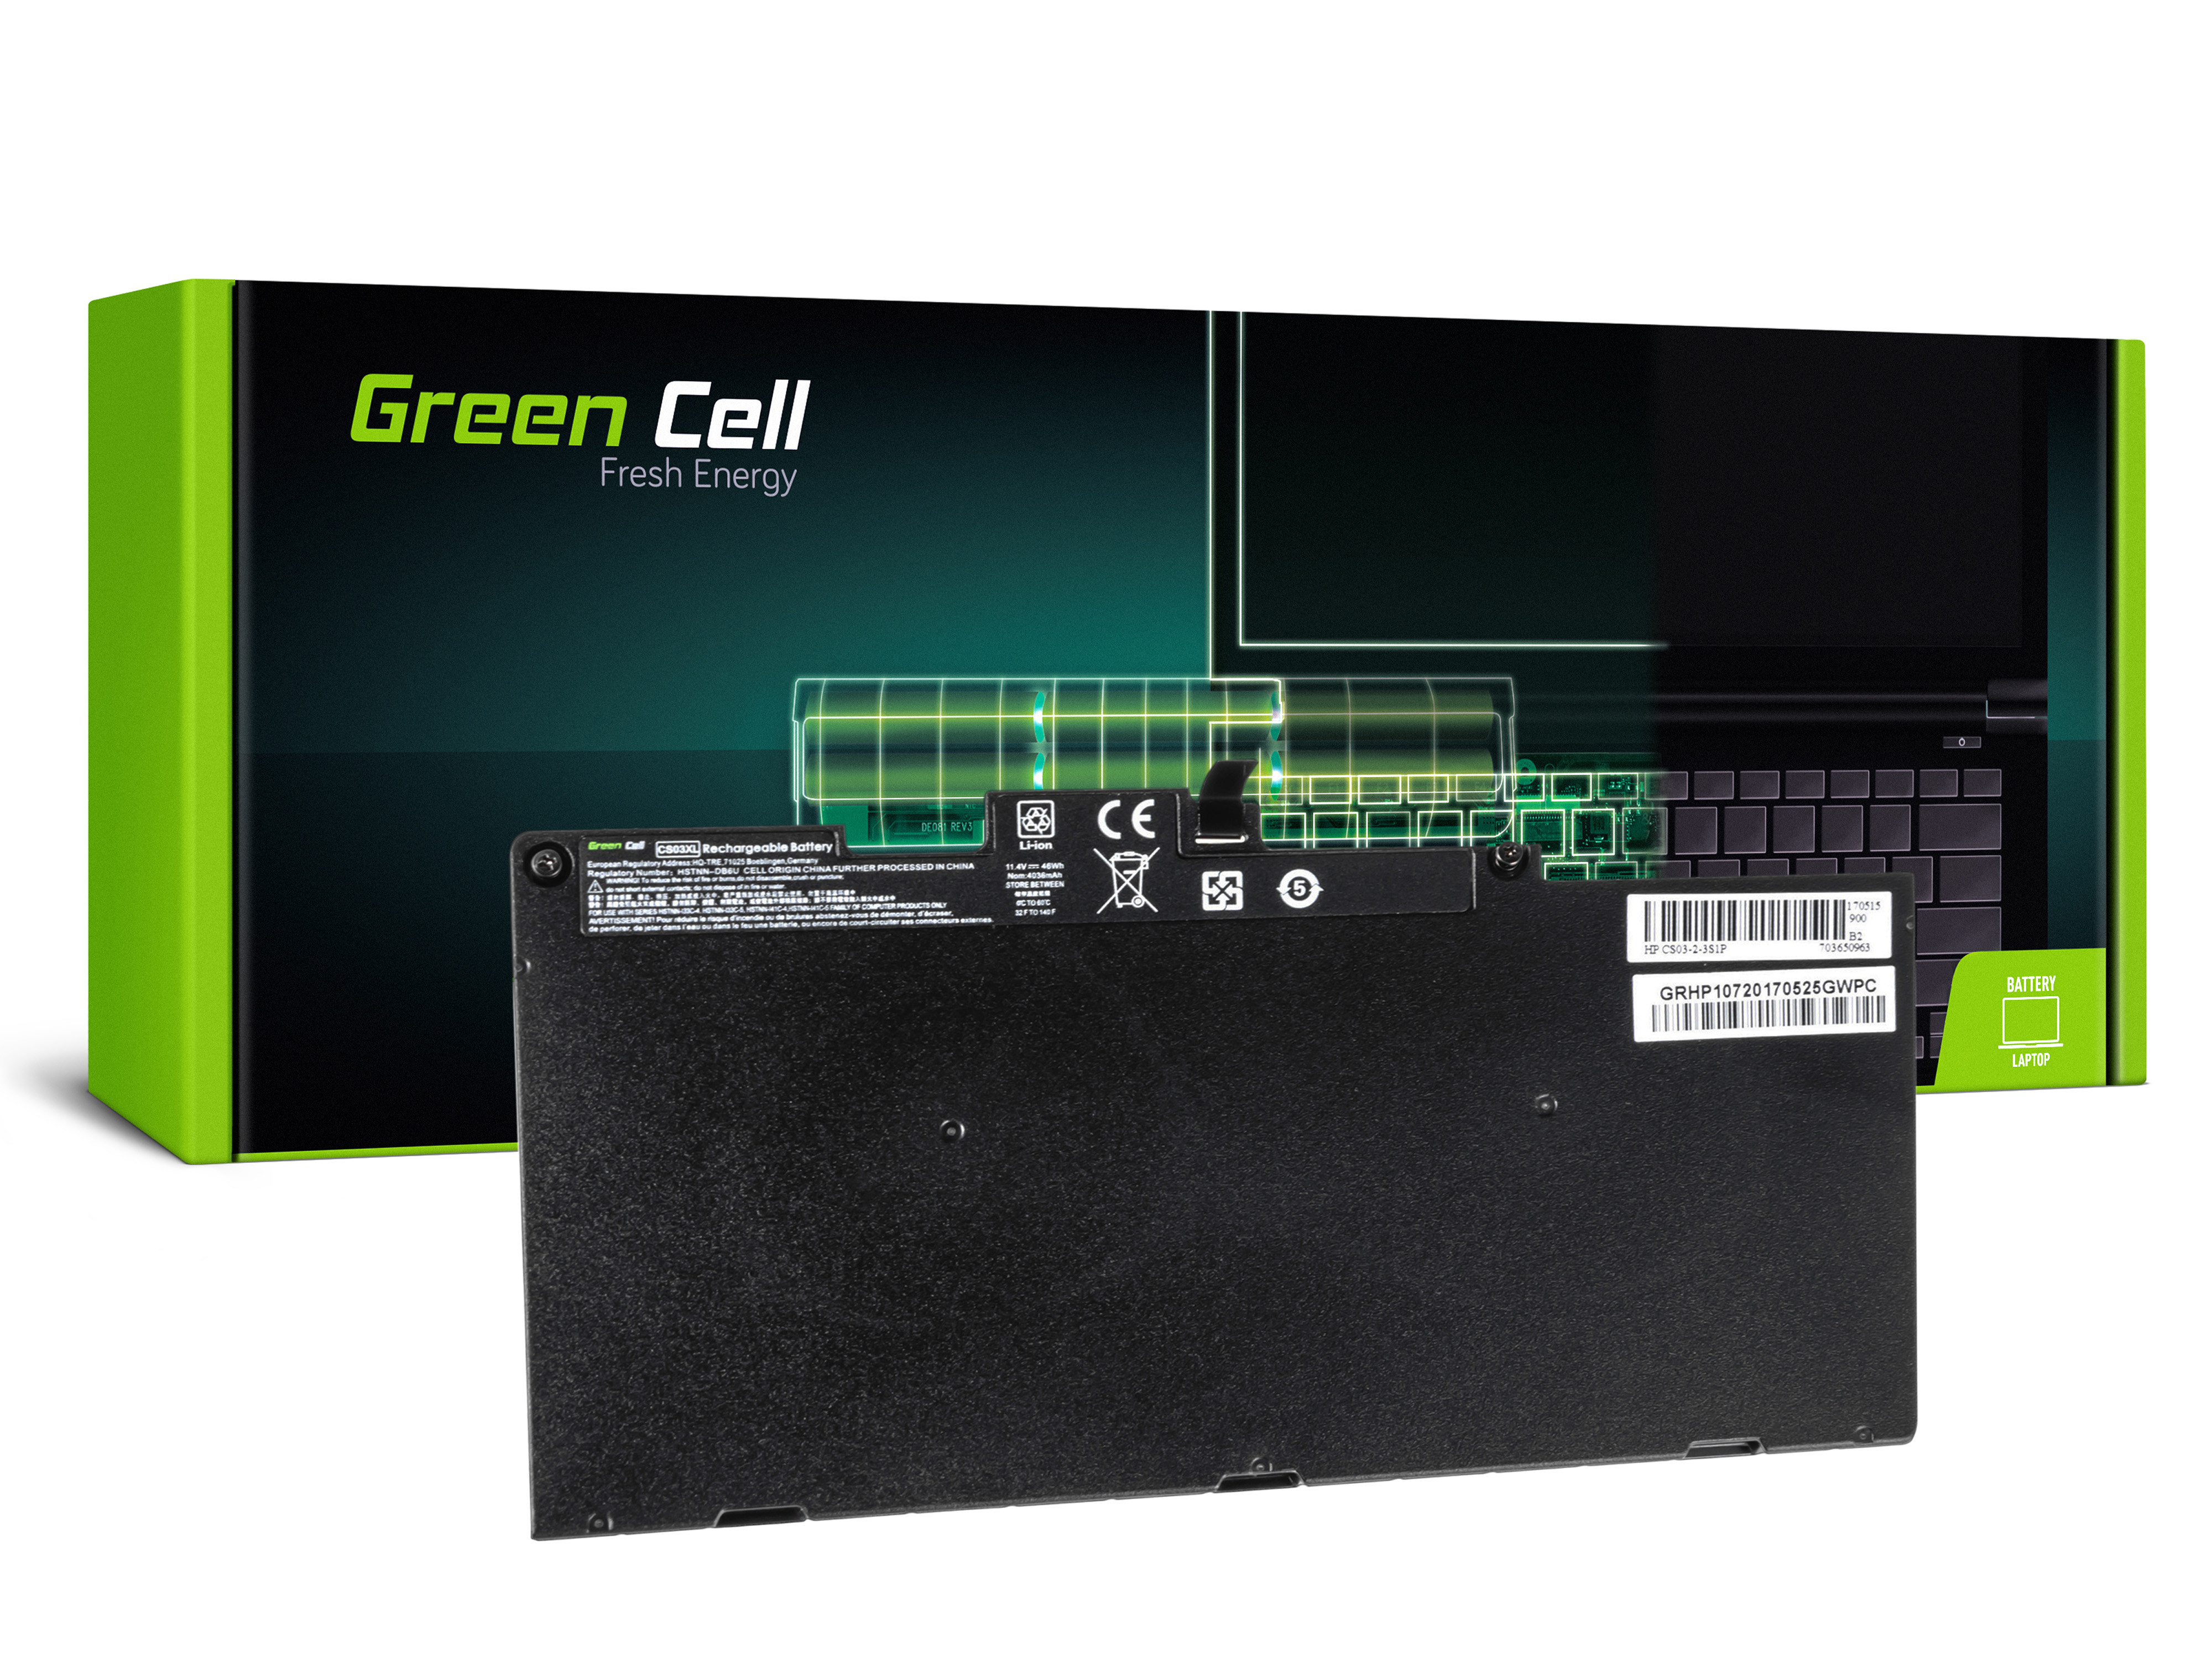 *Green Cell HP107 Baterie HP CS03XL EliteBook 745 G3 755 G3 840 G3 848 G3, ZBook G3 3400mAh Li-Pol